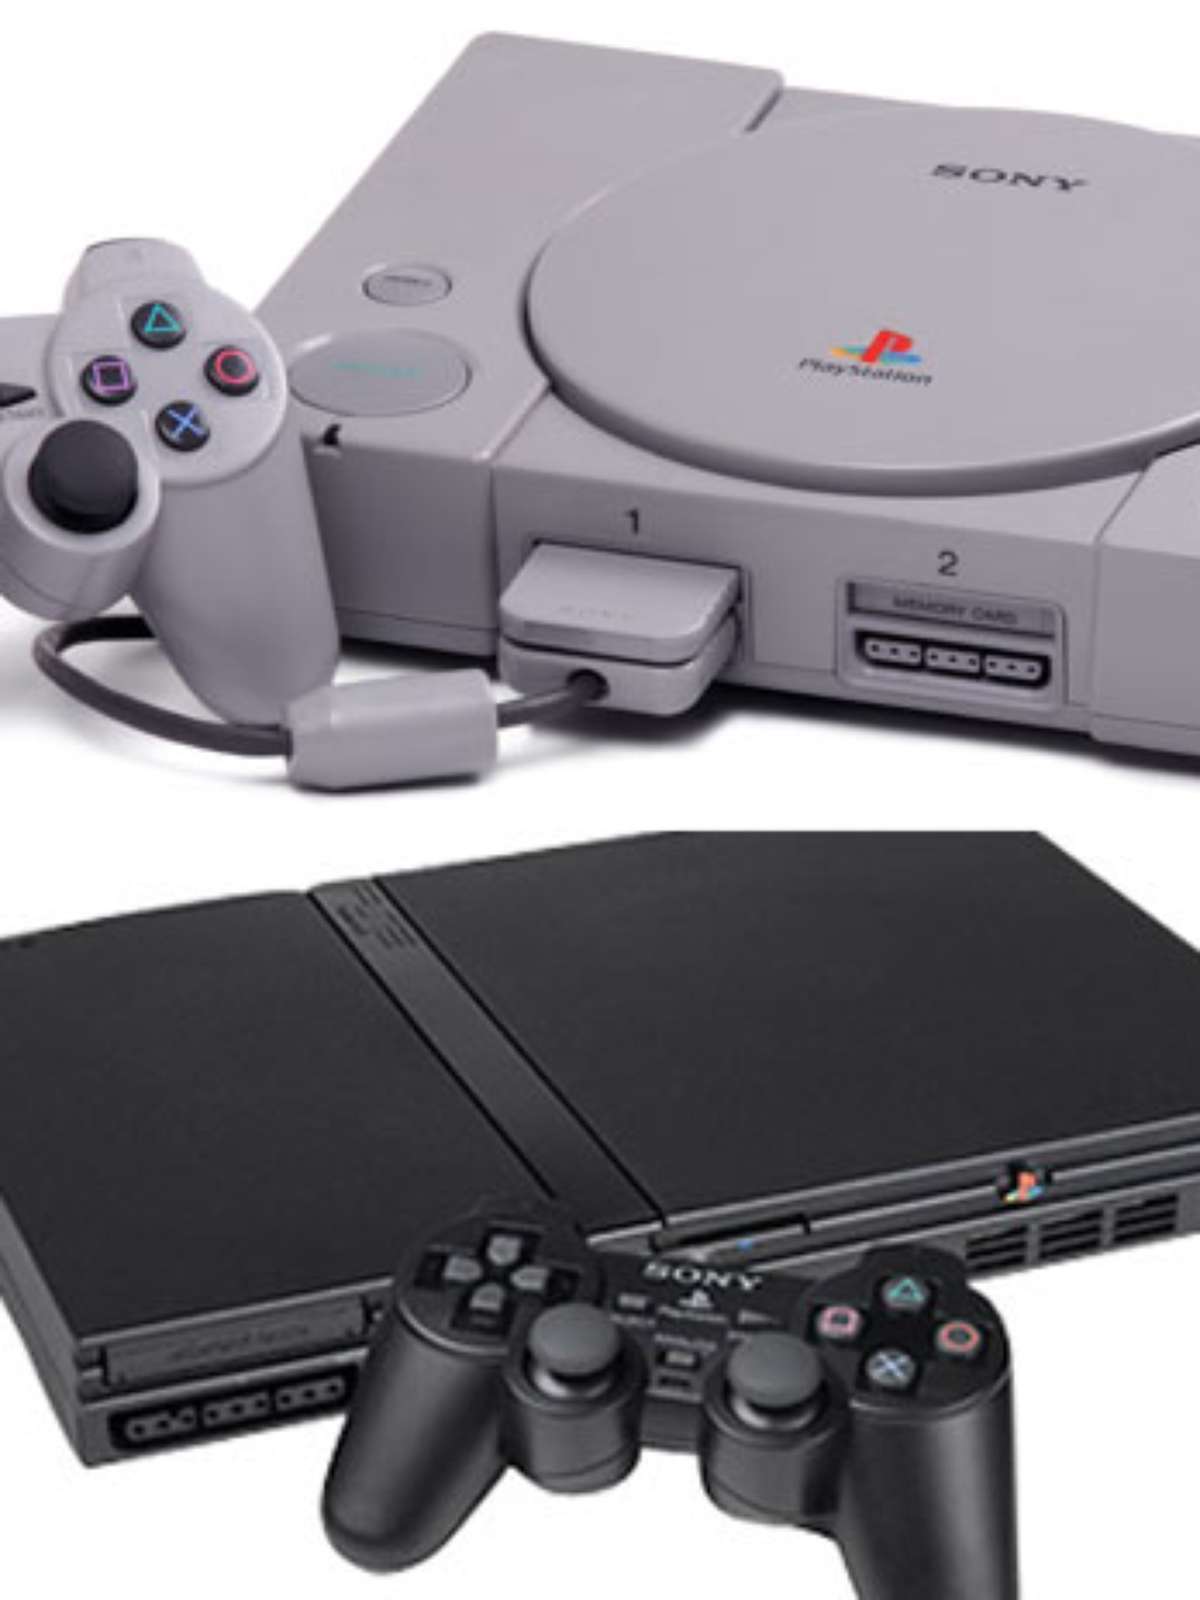 PlayStation divulga ofertas da Black Friday